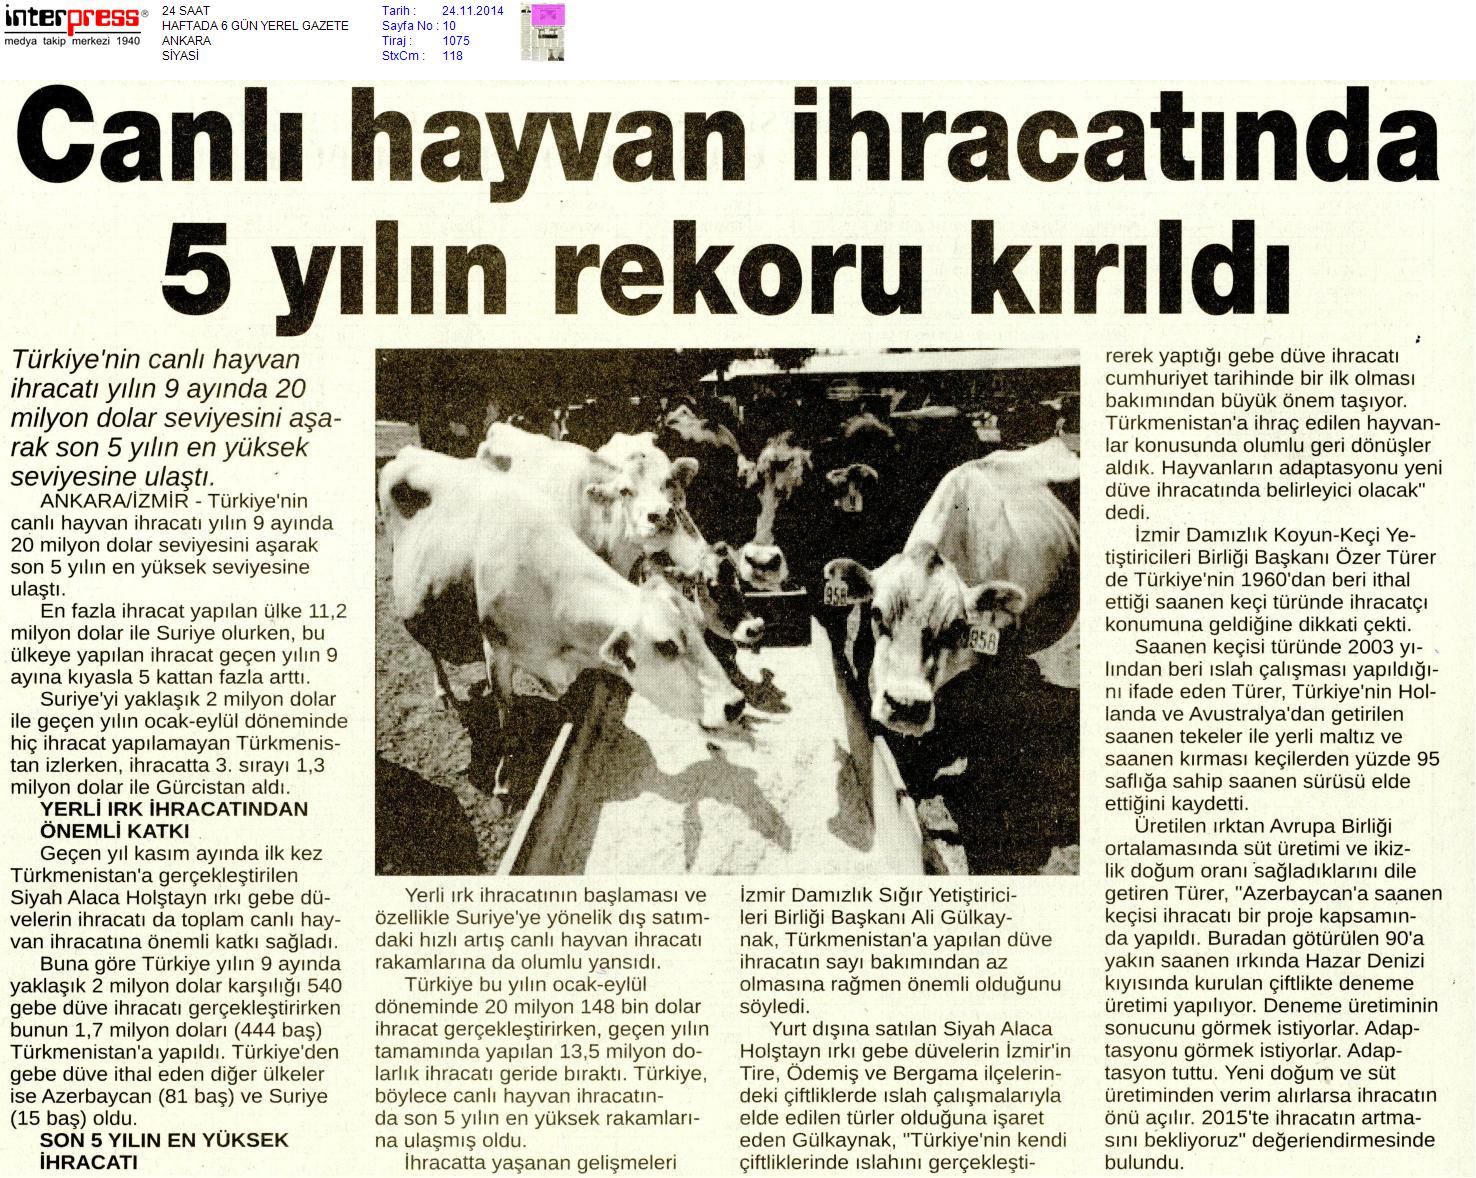 Canlı Hayvan İhracatında 5 Yılın Rekoru Kırıldı-24 Saat Gazetesi